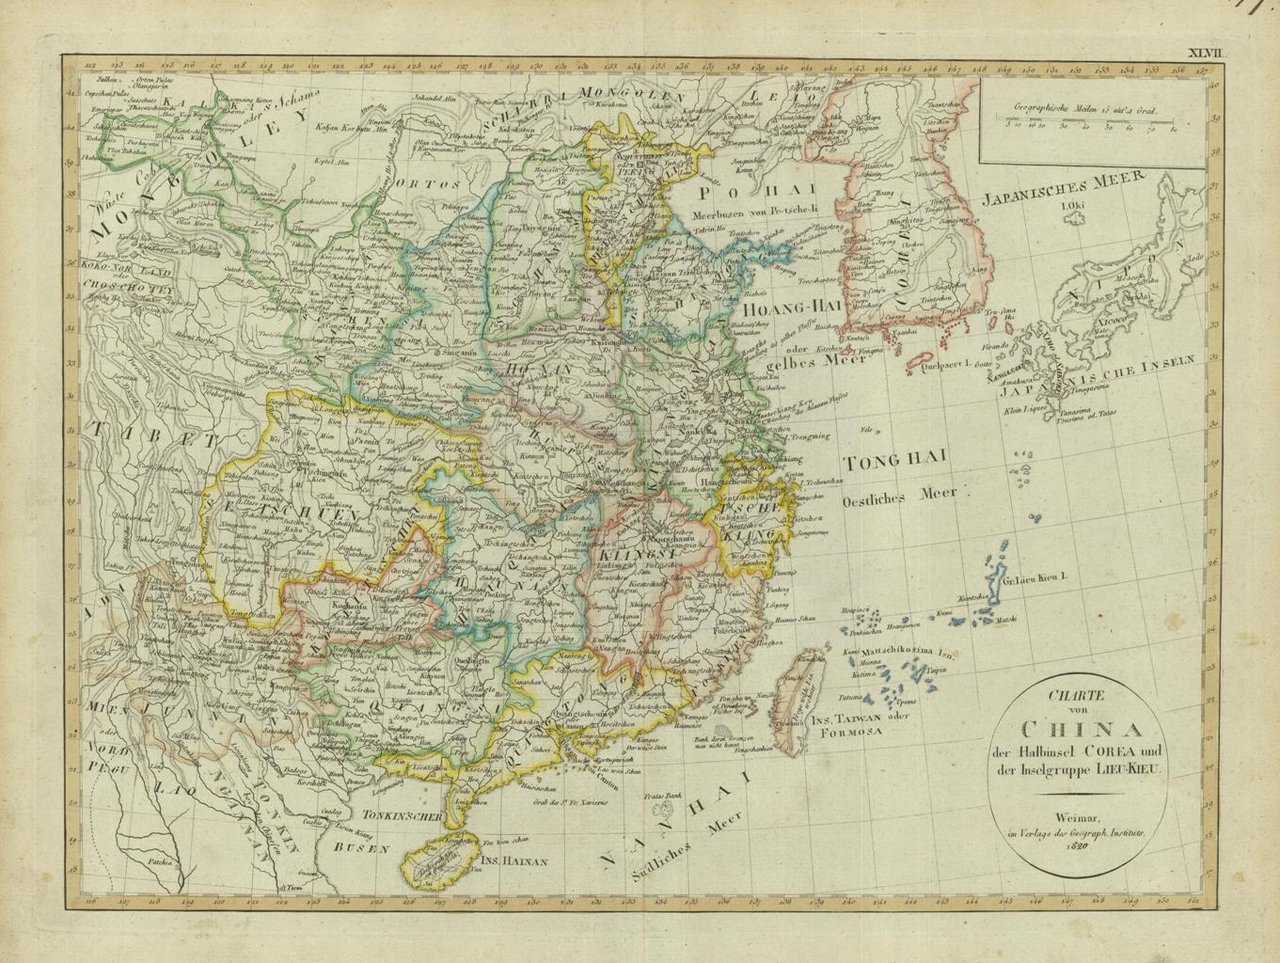 Charte von China der Halbinsel Corea und der Inselgruppe Lieu-Kieu